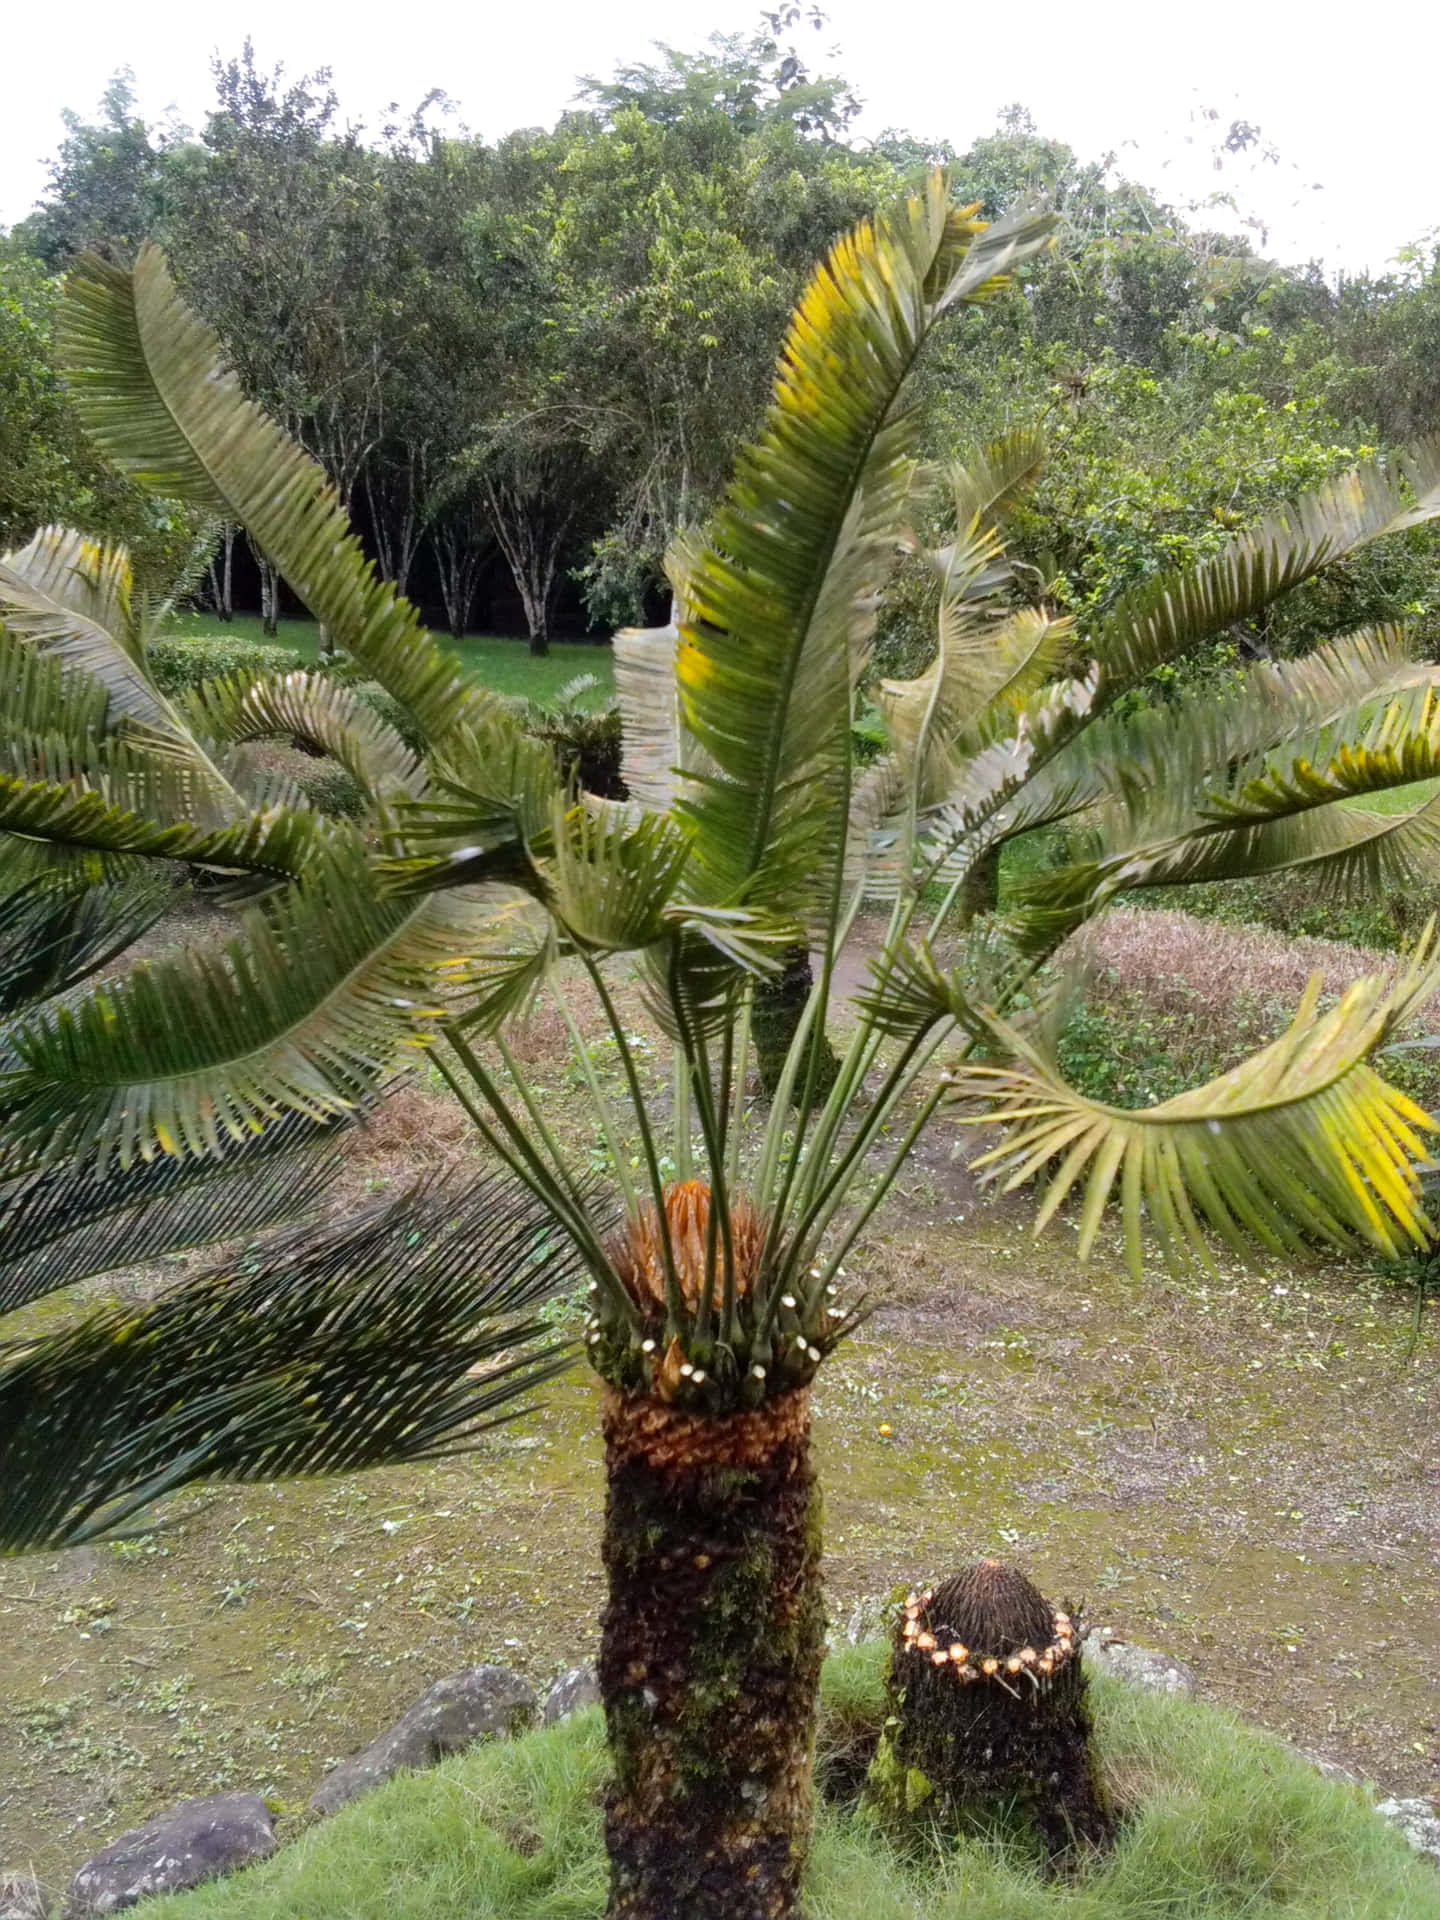 Enbild På Tropiska Encephalartosväxter Till Dator- Eller Mobiltelefonens Bakgrundsbild.